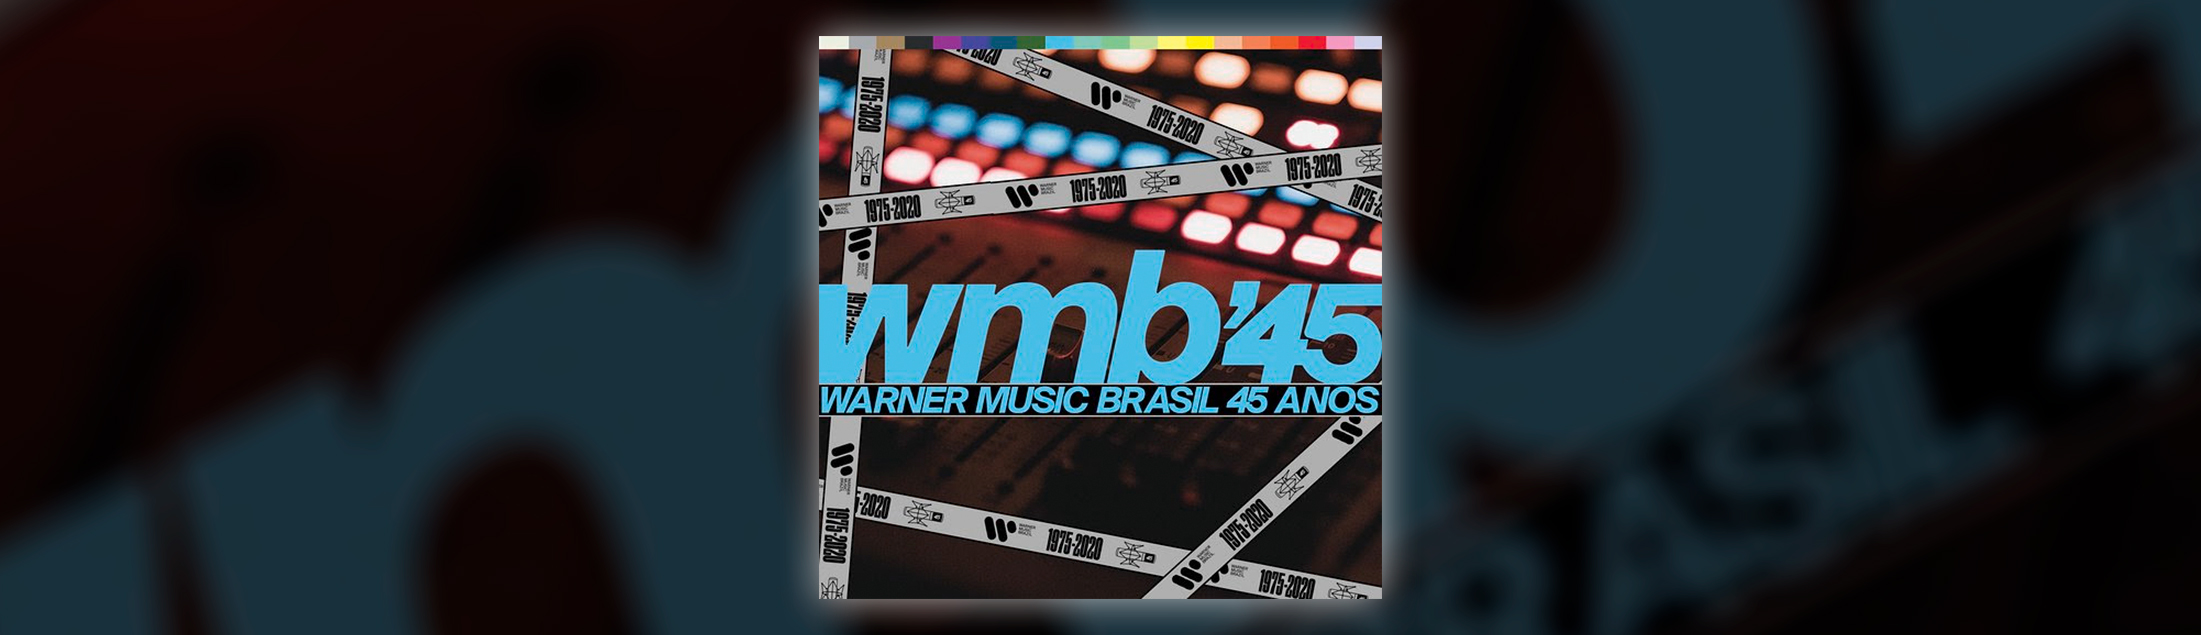 Warner Music Brasil comemora 45 anos de história com playlist repleta de sucessos